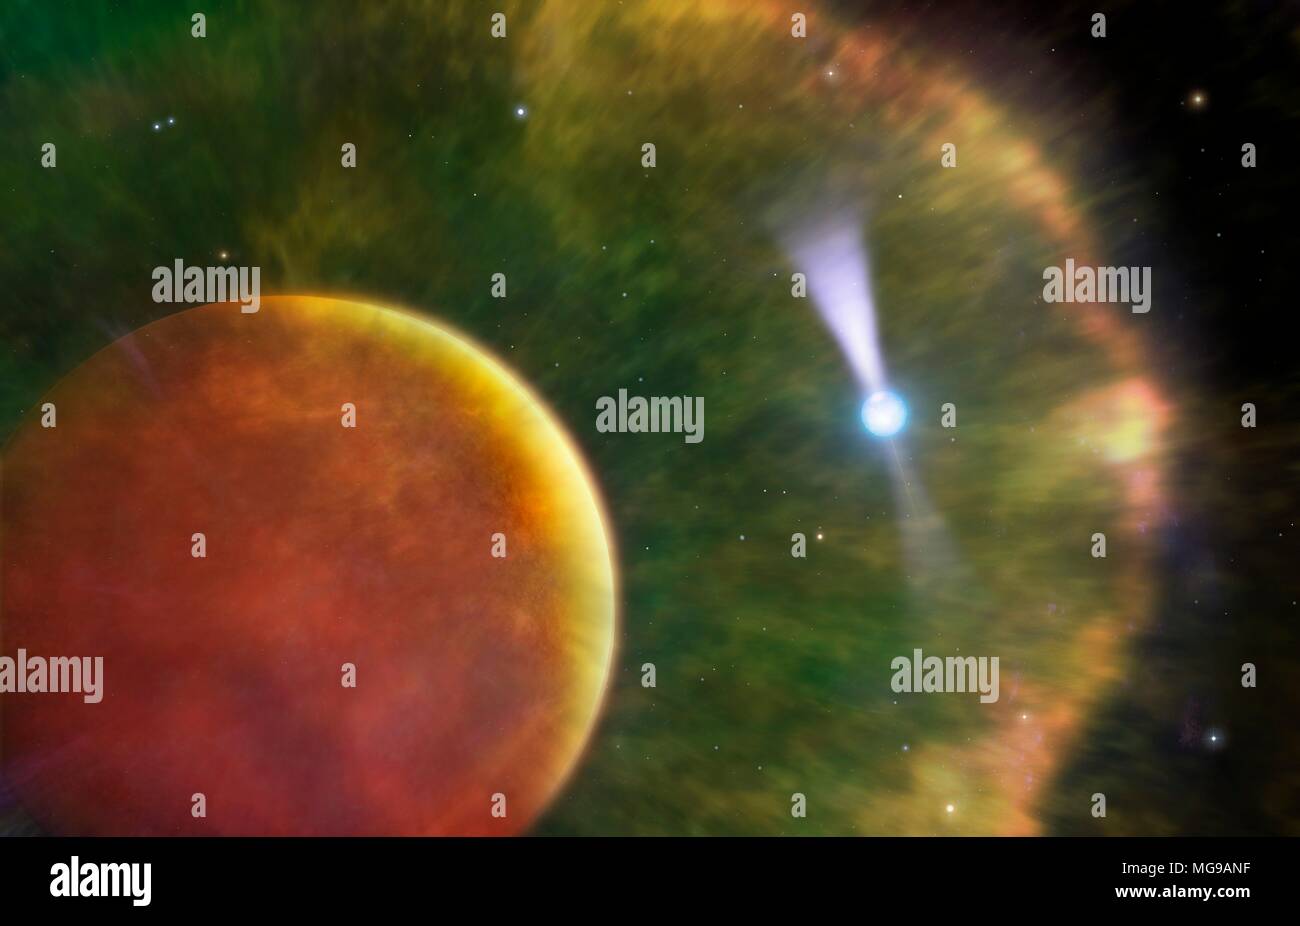 Ilustración de los llamados Black Widow Pulsar. Este es un púlsar (derecha), una estrella de neutrones de rotación rápida, descubierto en 1988, que se encuentra en órbita alrededor de una enana marrón (izquierda). El nombre de la viuda negra se aplica porque el compañero para el pulsar está siendo destruido por ella. Los enanos marrones son objetos que forman como estrellas, pero que no alcancen el núcleo la temperatura necesaria para fusionar hidrógeno en helio, como en verdaderas estrellas. Los astrónomos han detectado un arco de choque alrededor de la enana marrón, creado como radiación desde el pulsar se envuelve alrededor de la enana marrón. Foto de stock